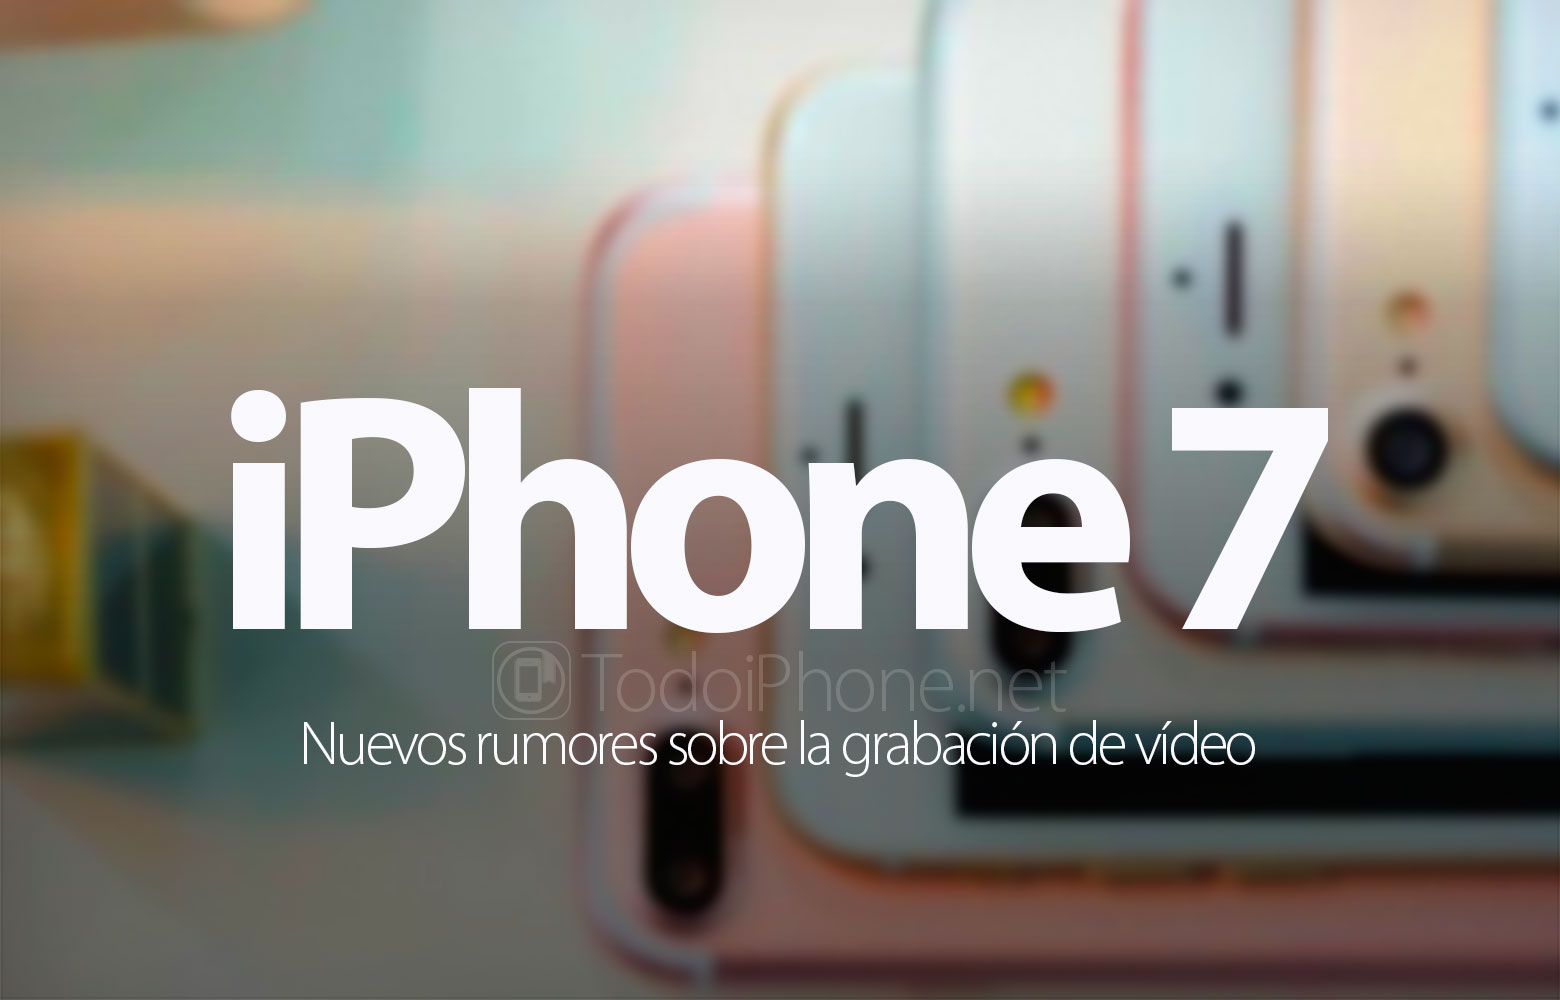 iphone-7-grabar-videos-4k-60-fps-rumor